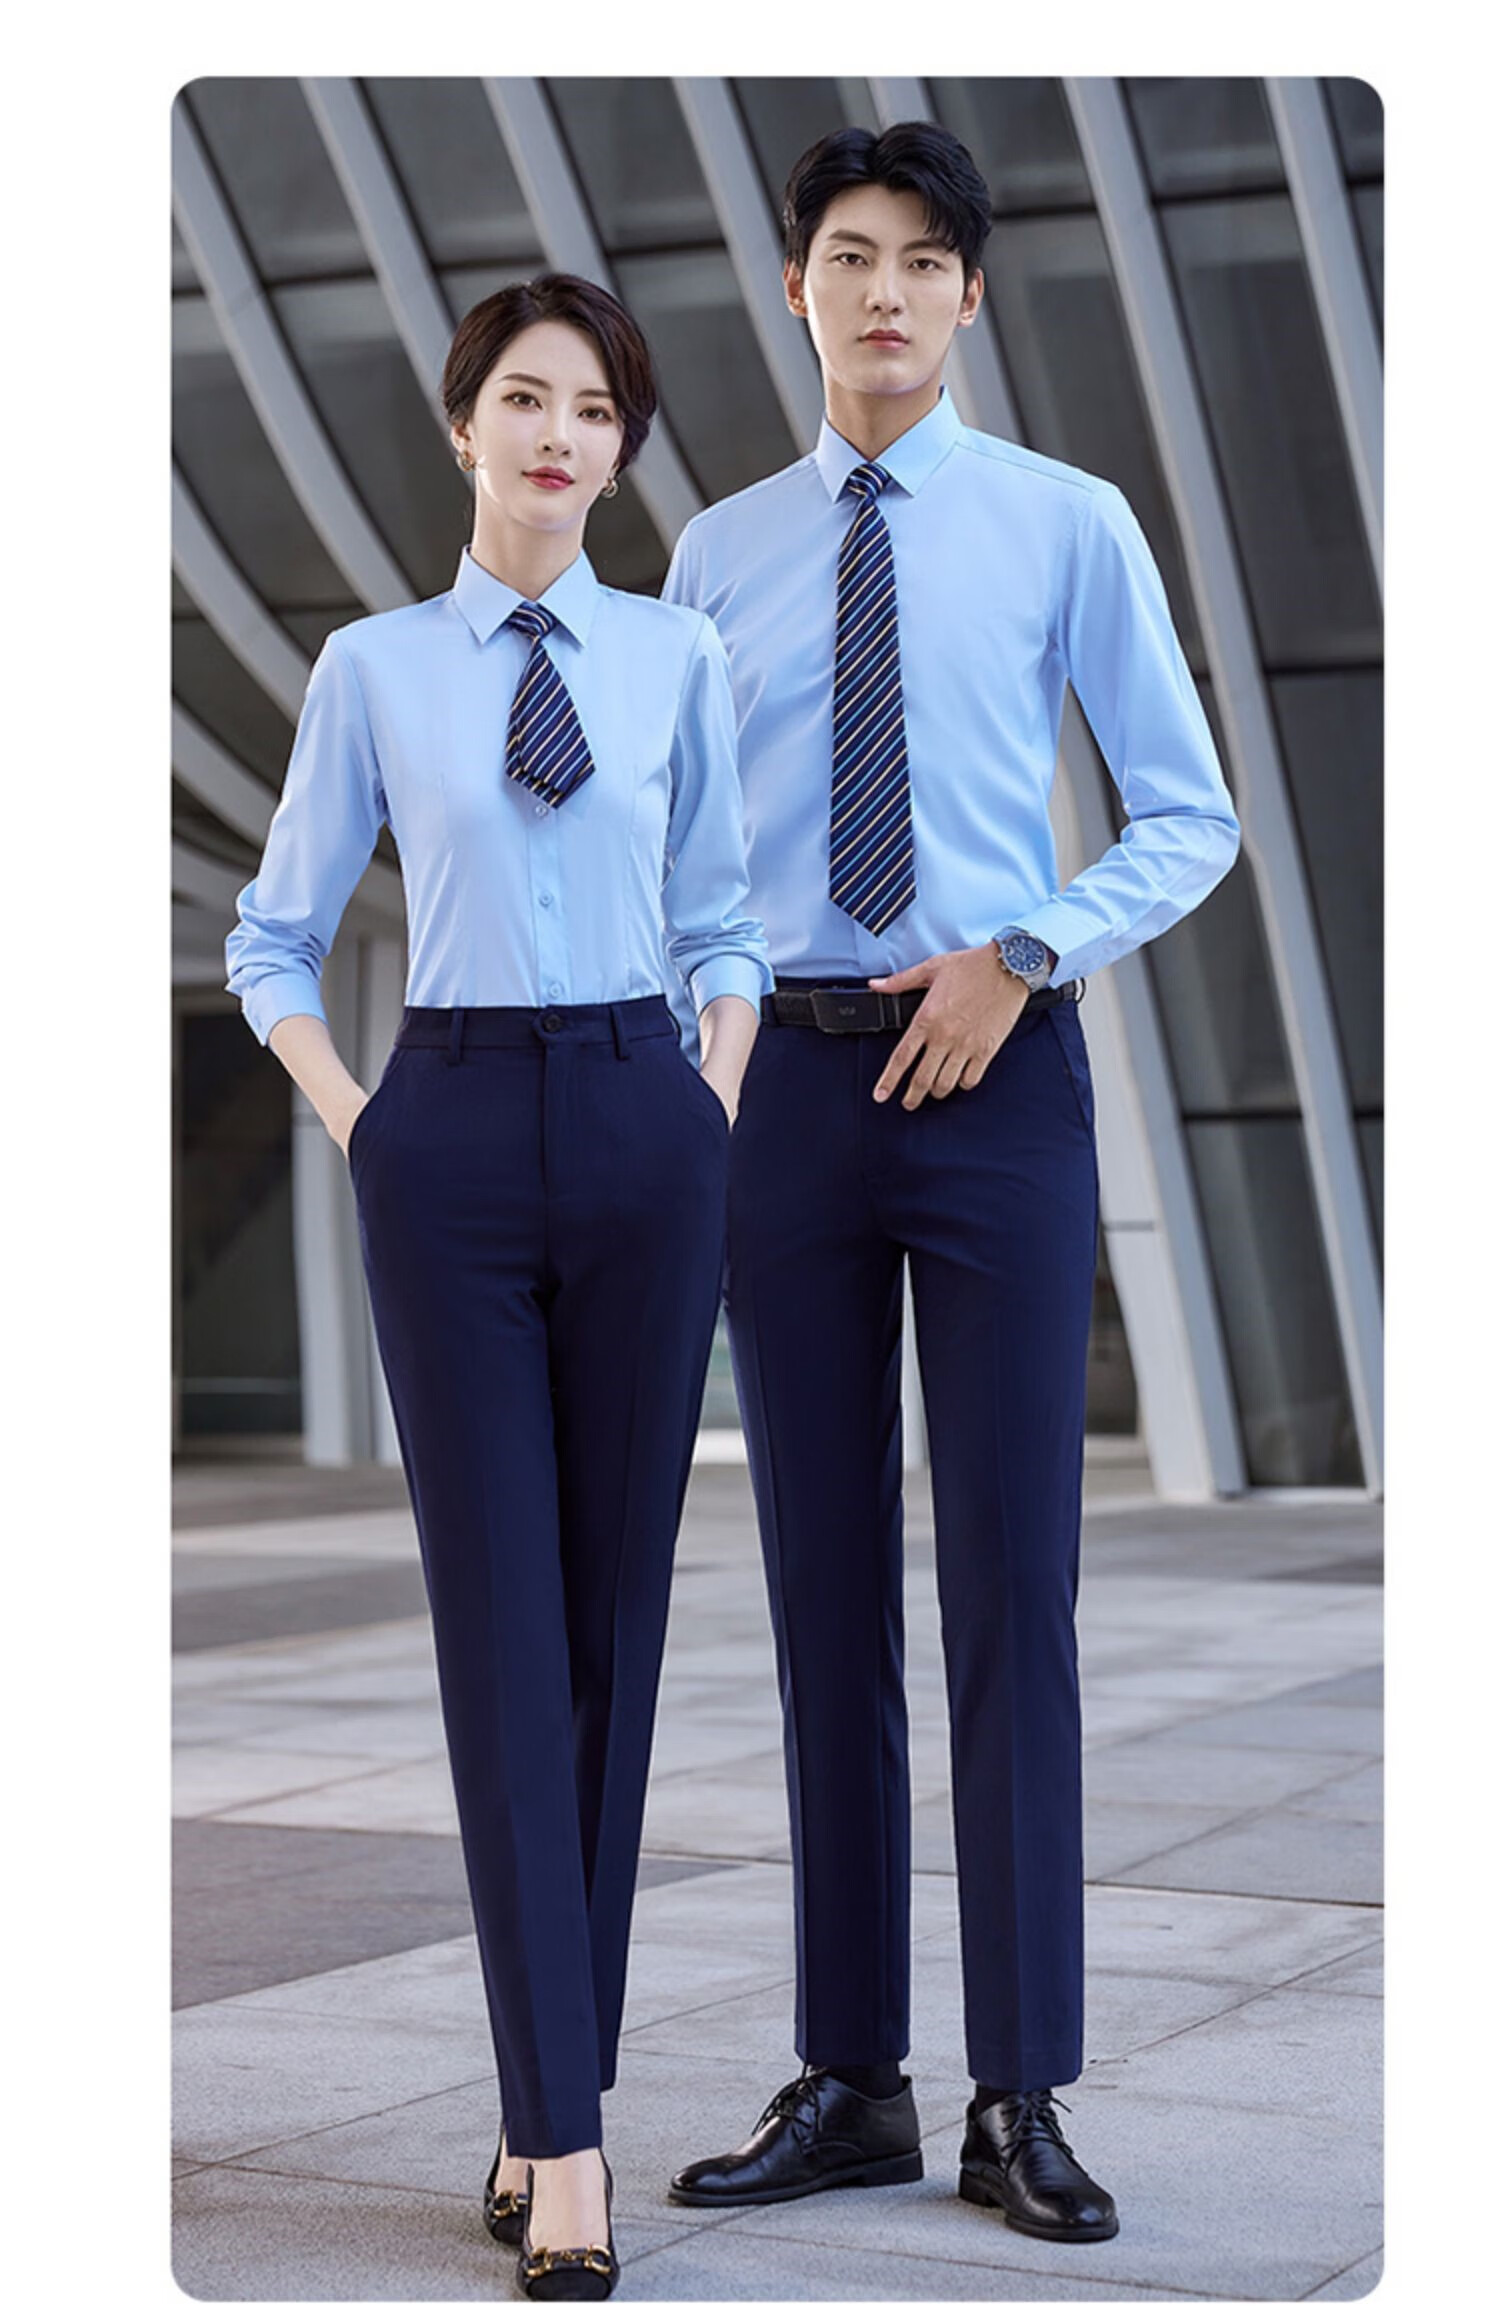 比亚迪长袖员工工衣4s店销售上班正装工作服衬衫男女同款浅蓝色衬衣绣